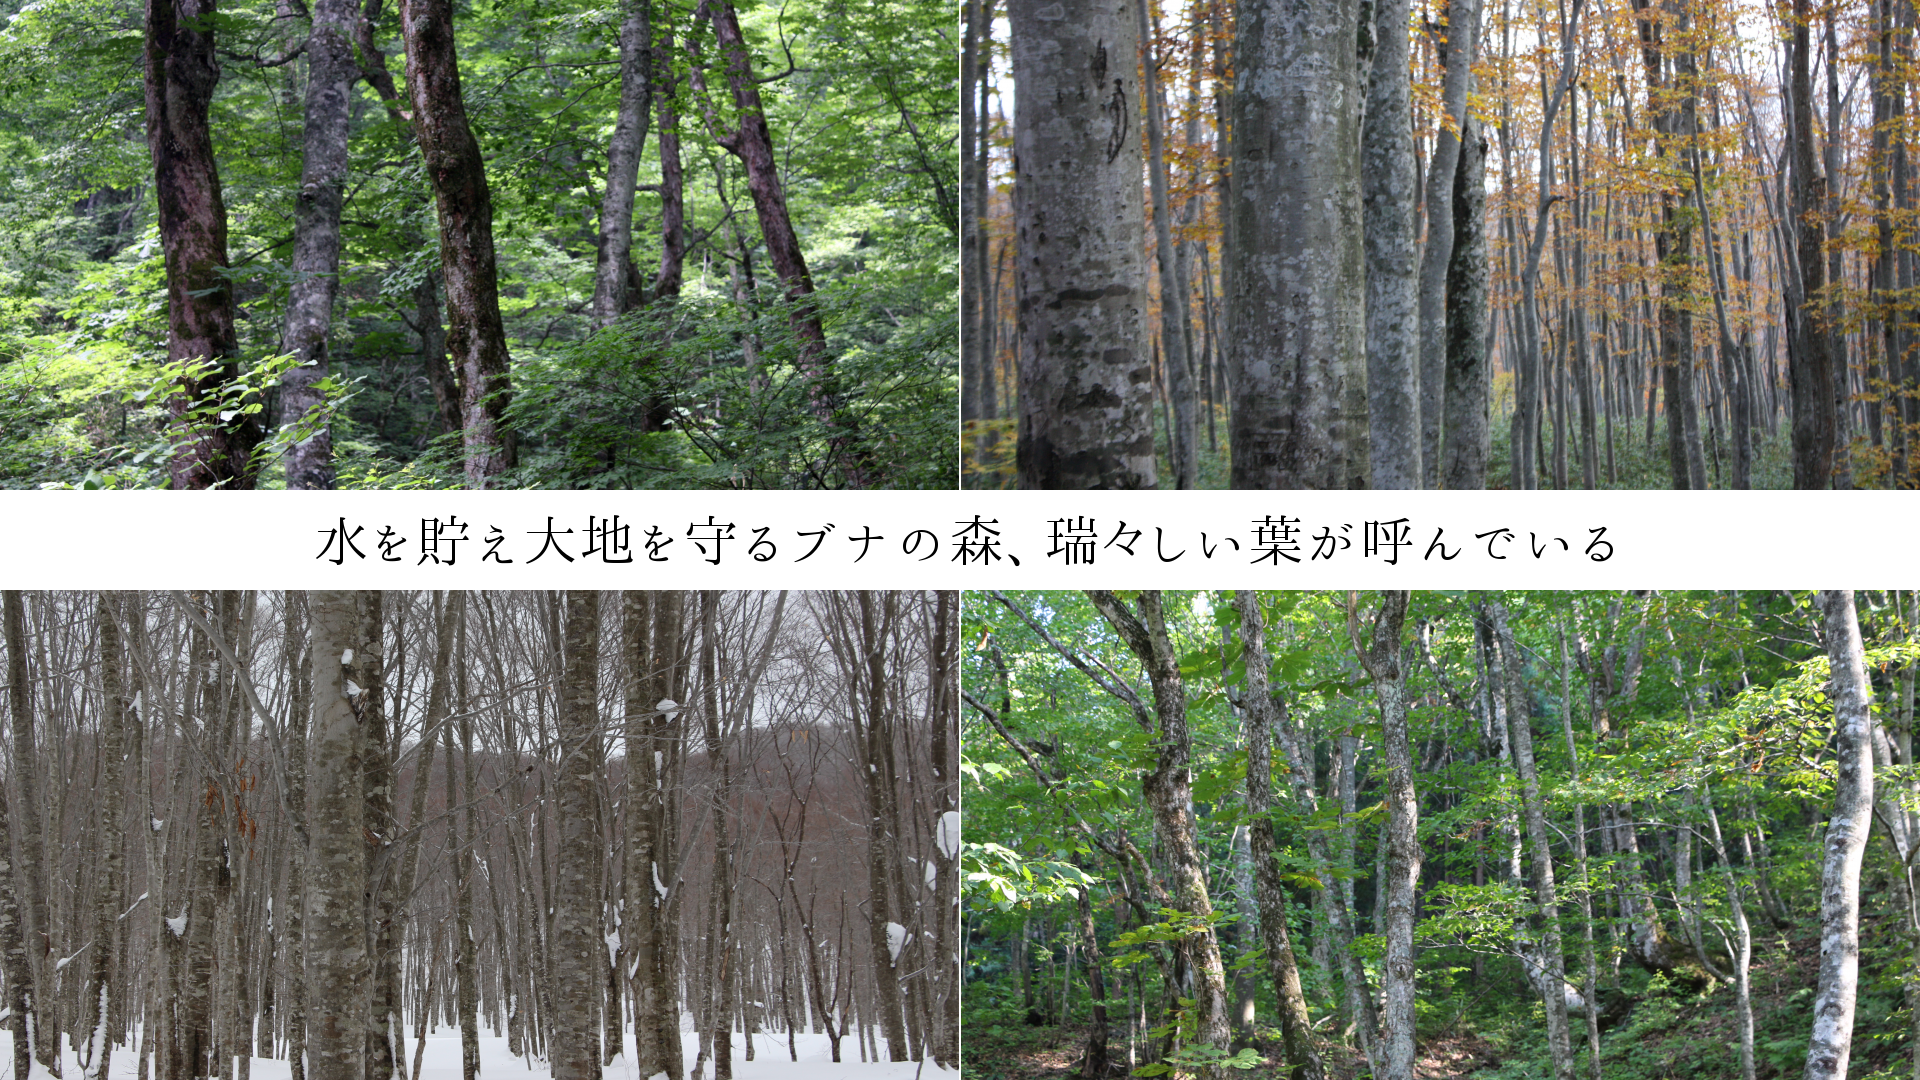 水を貯え大地を守るブナの森、瑞々しい葉が呼んでいる